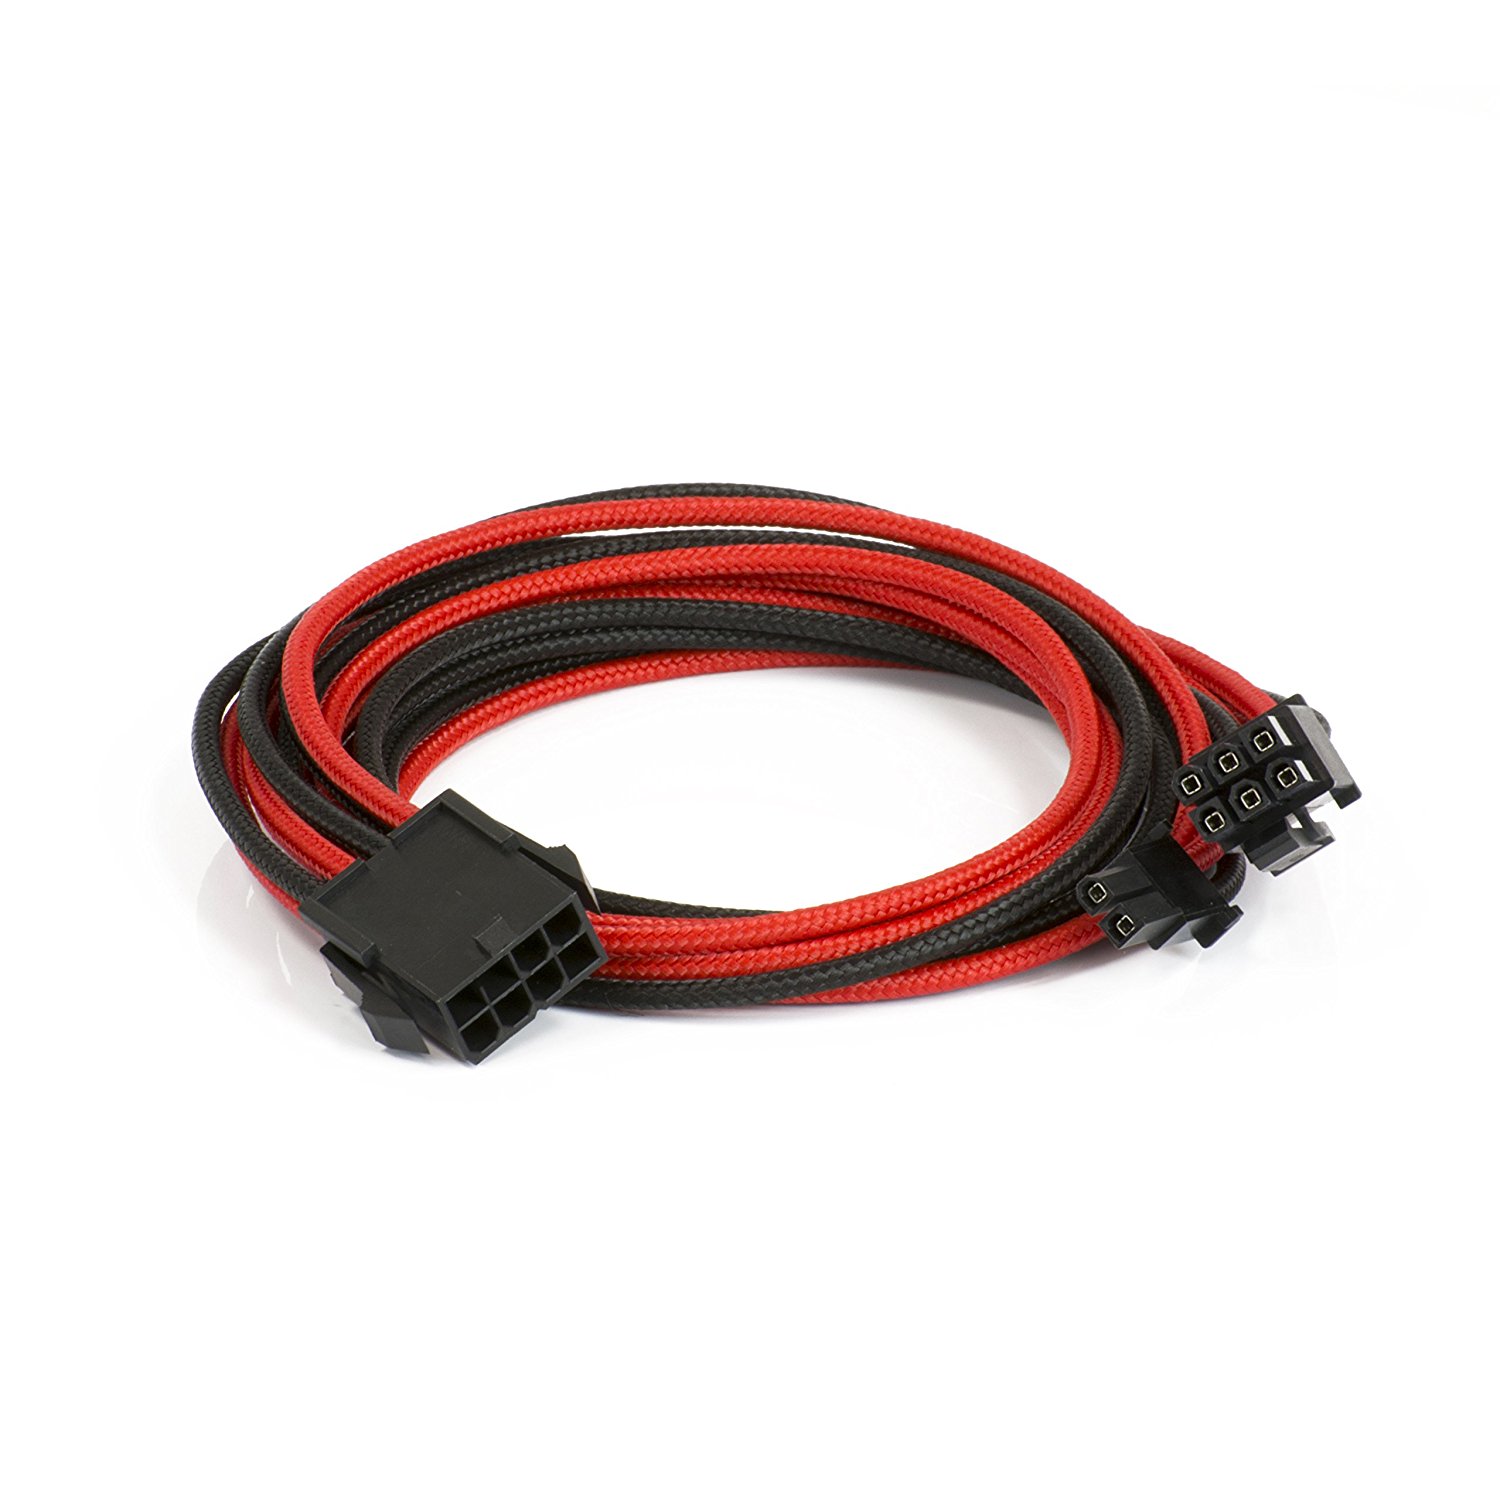 Cable PSU Phanteks Sleeved 6+2-Pines PCIe 50cm Negro / Rojo